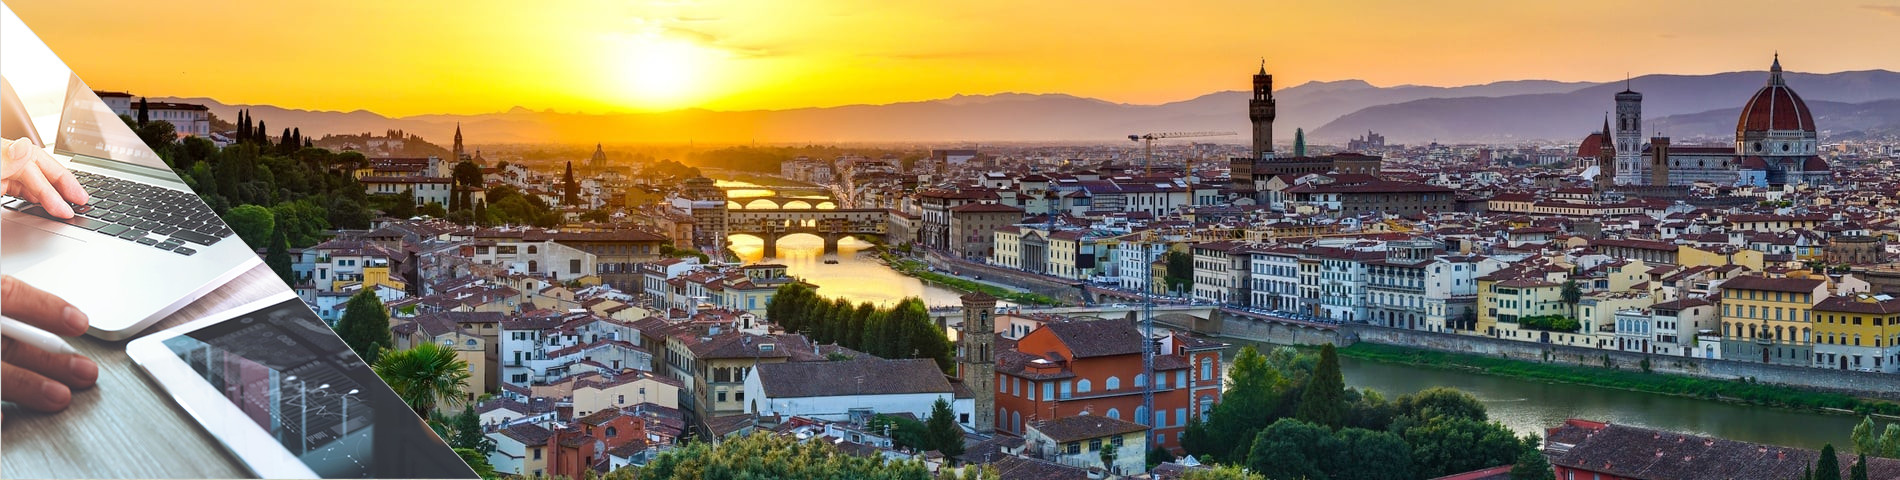 Florencia - Italiano y Medios digitales